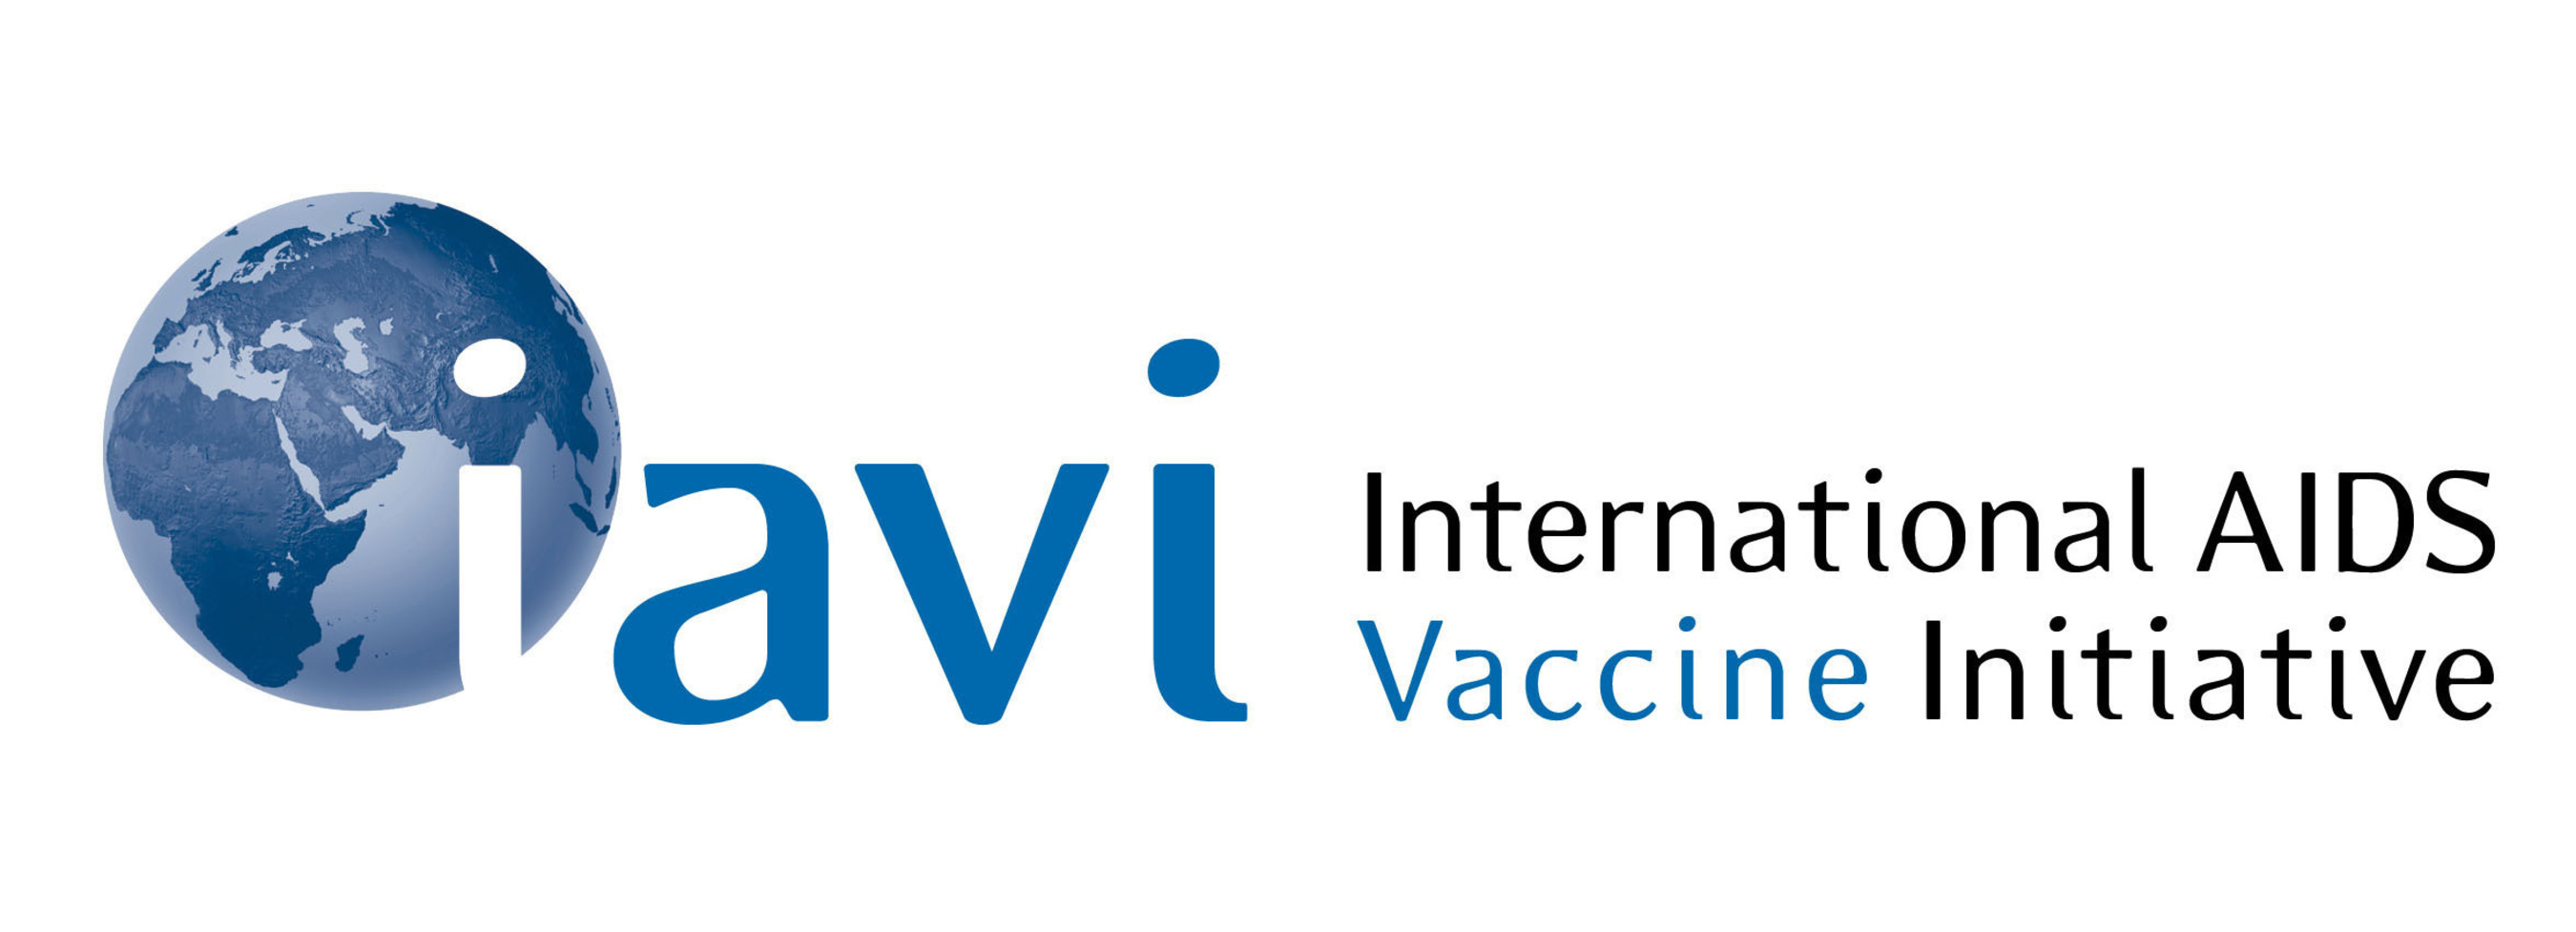 International AIDS Vaccine Initiative Logo. (PRNewsFoto/International AIDS Vaccine Initiative) (PRNewsFoto/INTERNATIONAL AIDS VACCINE ___) (PRNewsFoto/INTERNATIONAL AIDS VACCINE ...)